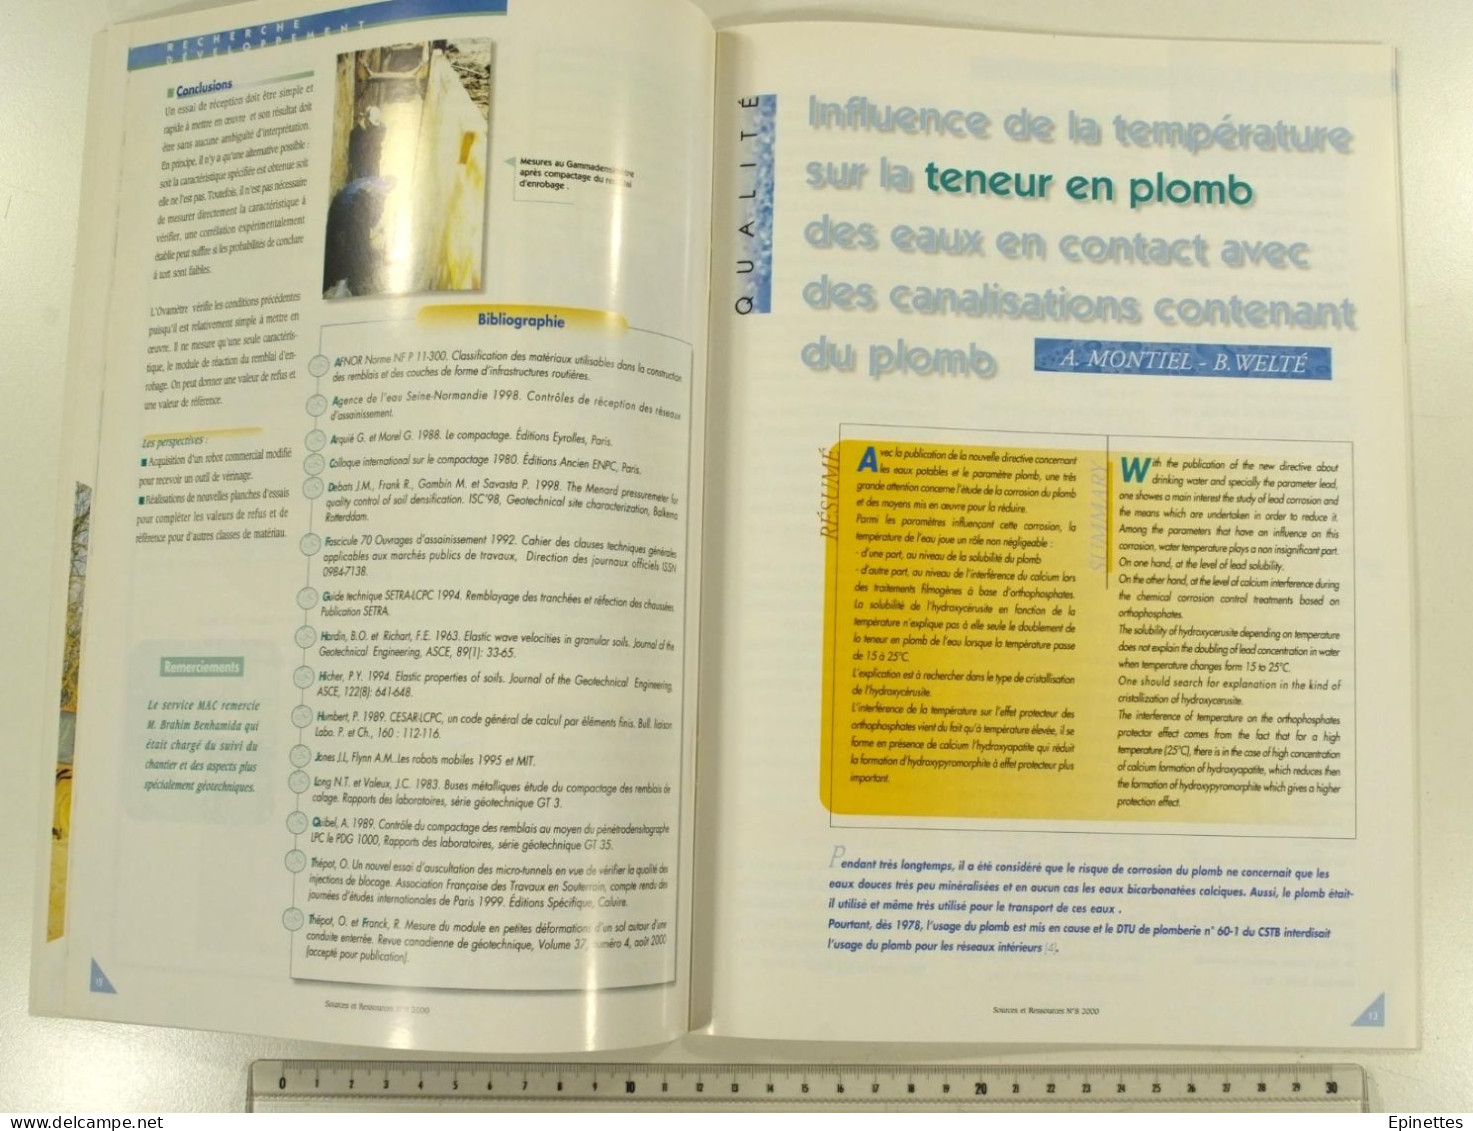 Lot 10 n°s Sources & Ressources, Revue technique de la SAGEP, Eau de Paris, n°1 à 9 + n° spécial Aqueducs, 1994-2001